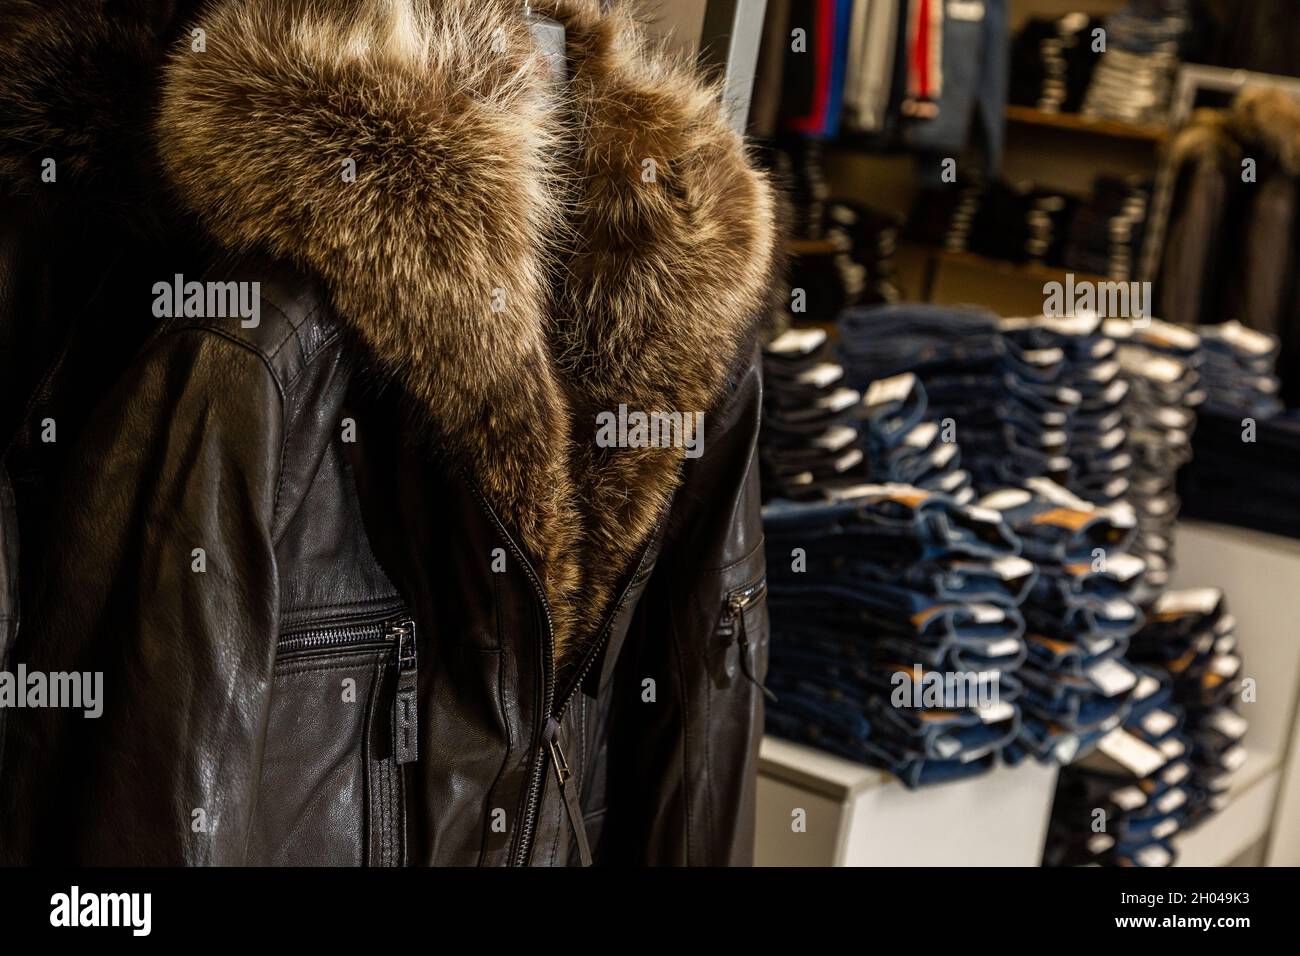 luvrumcaketoo  Fur clothing, Fur fashion, Fashion